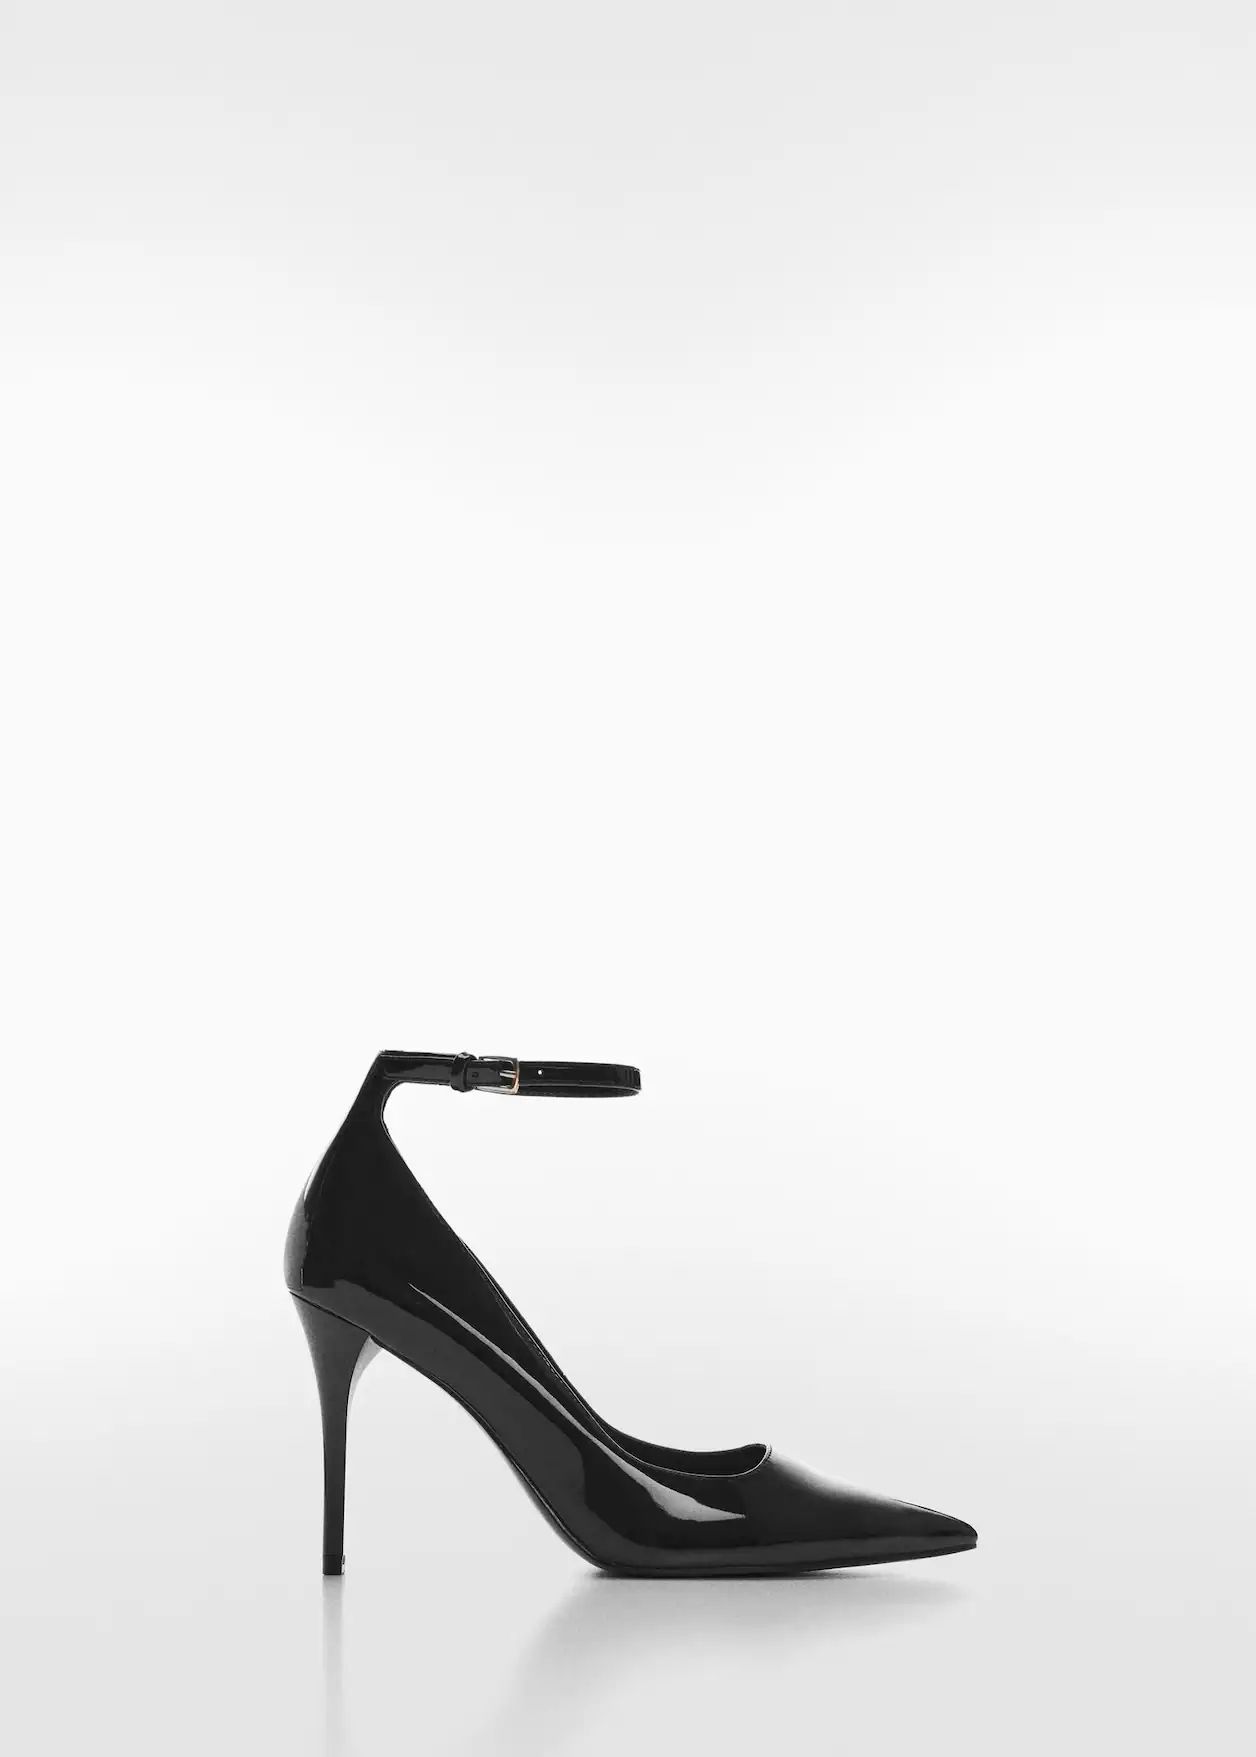 Patent leather-effect heeled shoesREF. 67000260-SOHO-LM | MANGO (US)